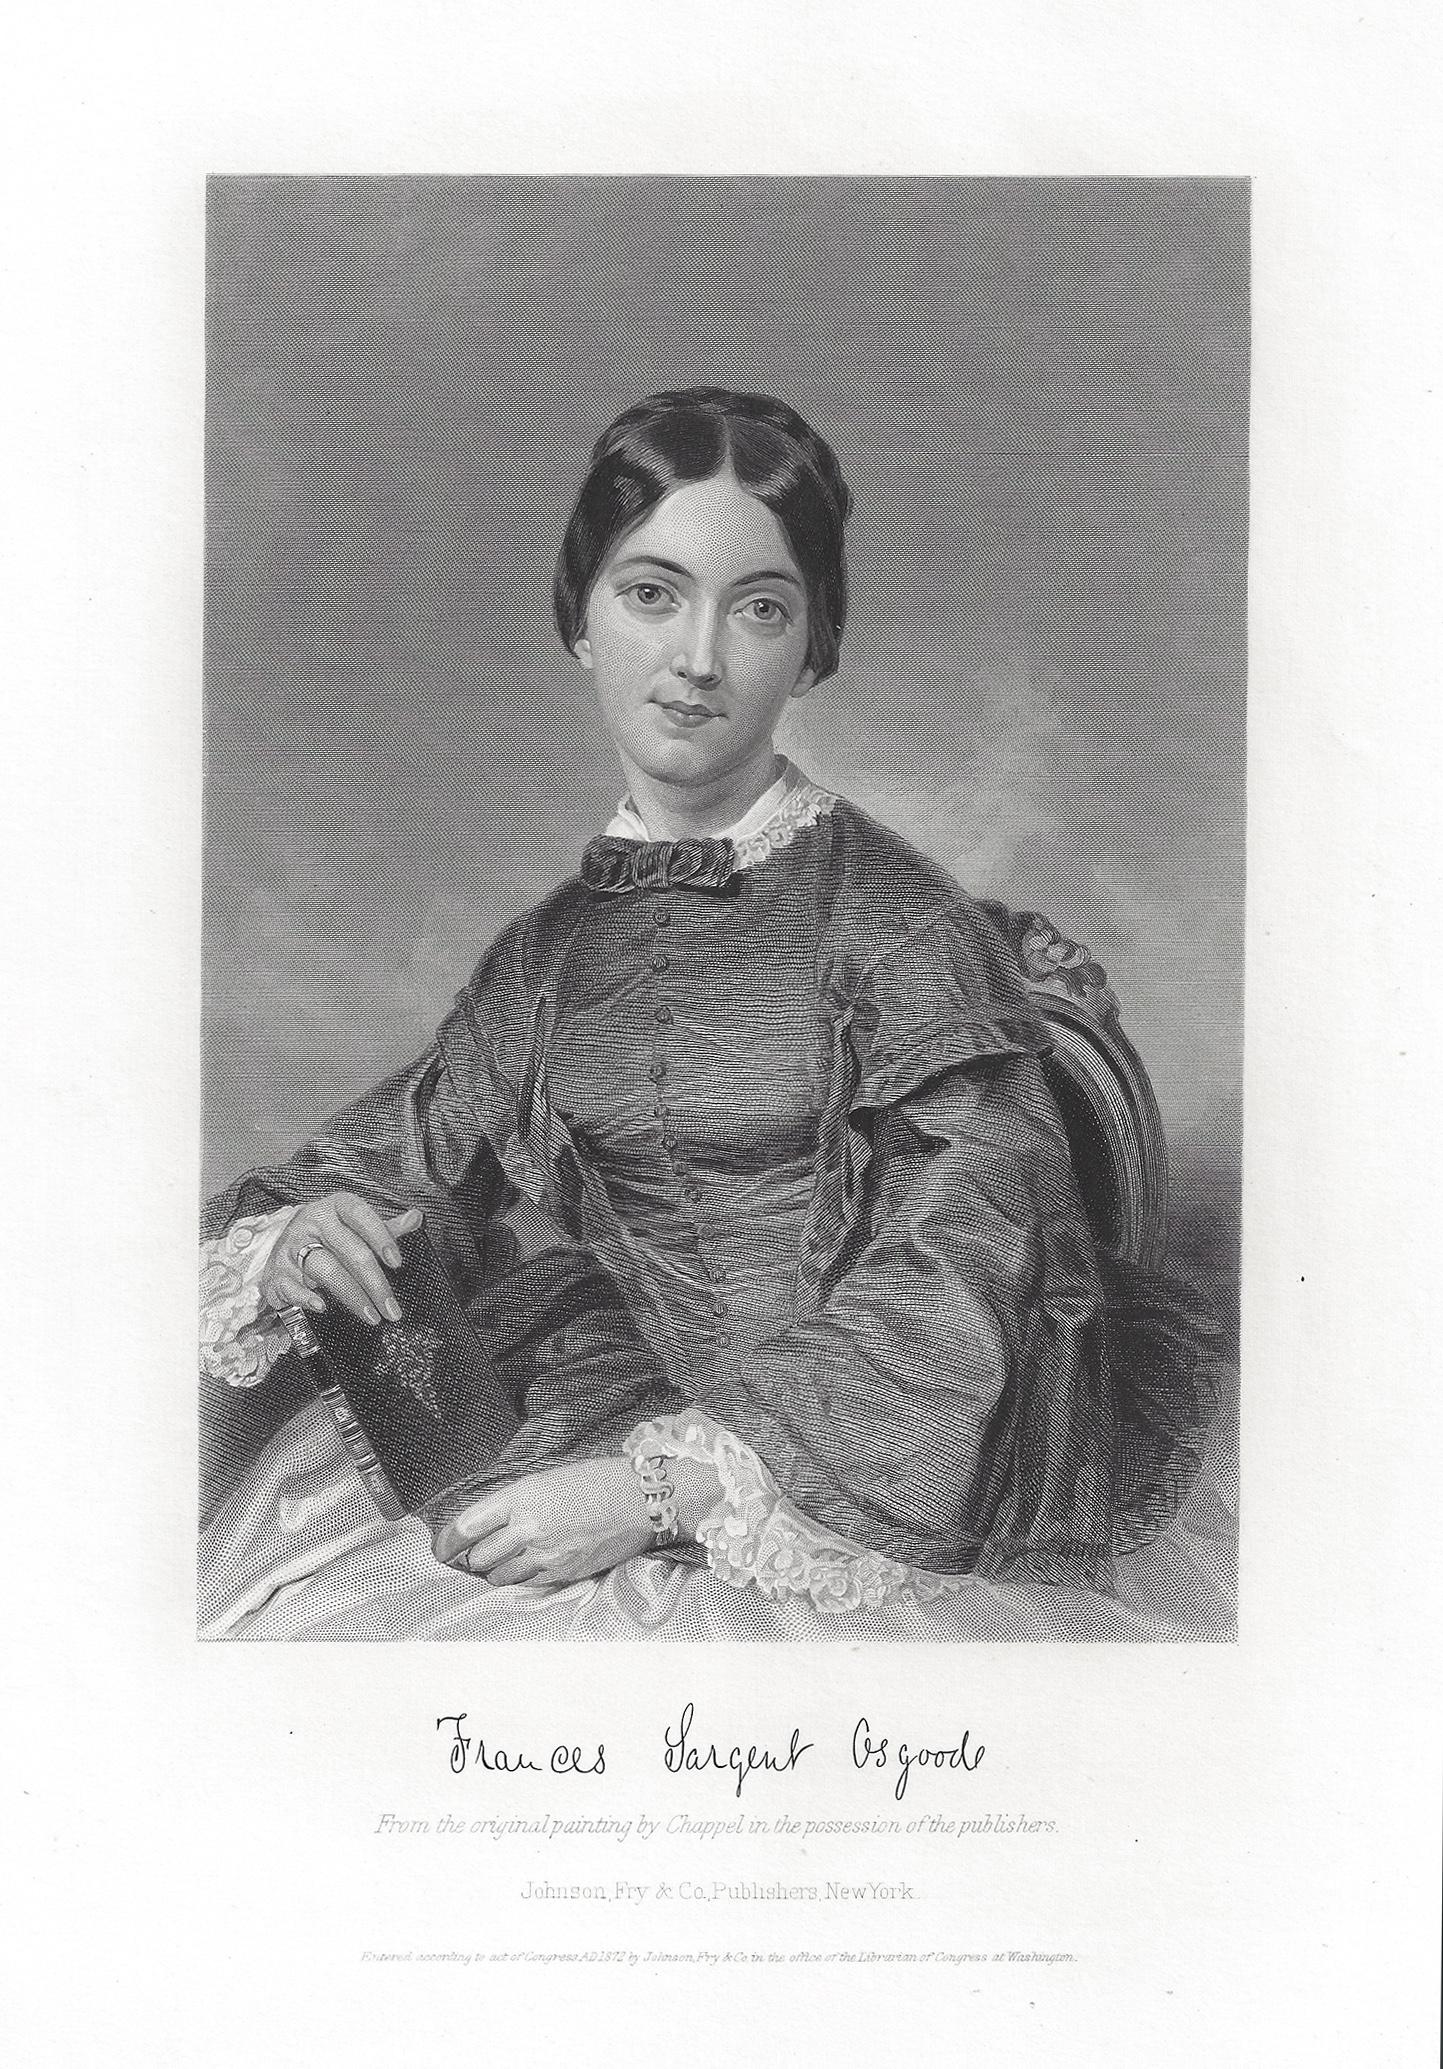 Alonzo Chappel Portrait Print - Frances Sargent Osgood, American poet, antique portrait engraving print, 1872